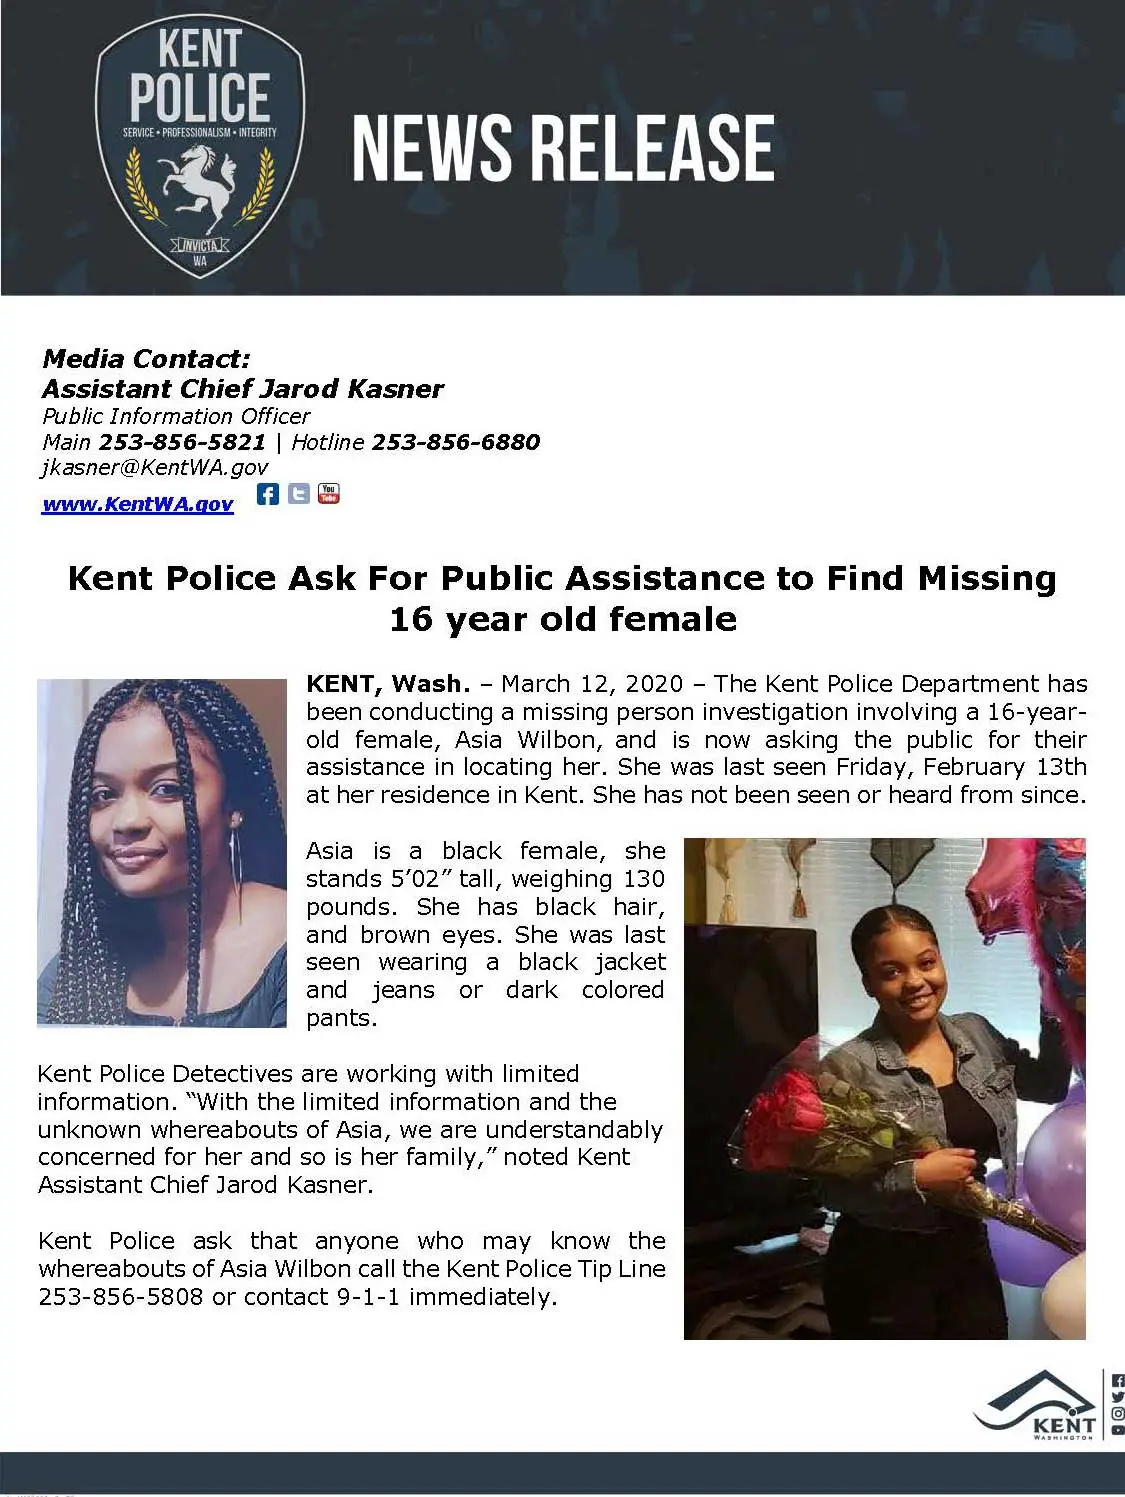 Kent Police seeking public